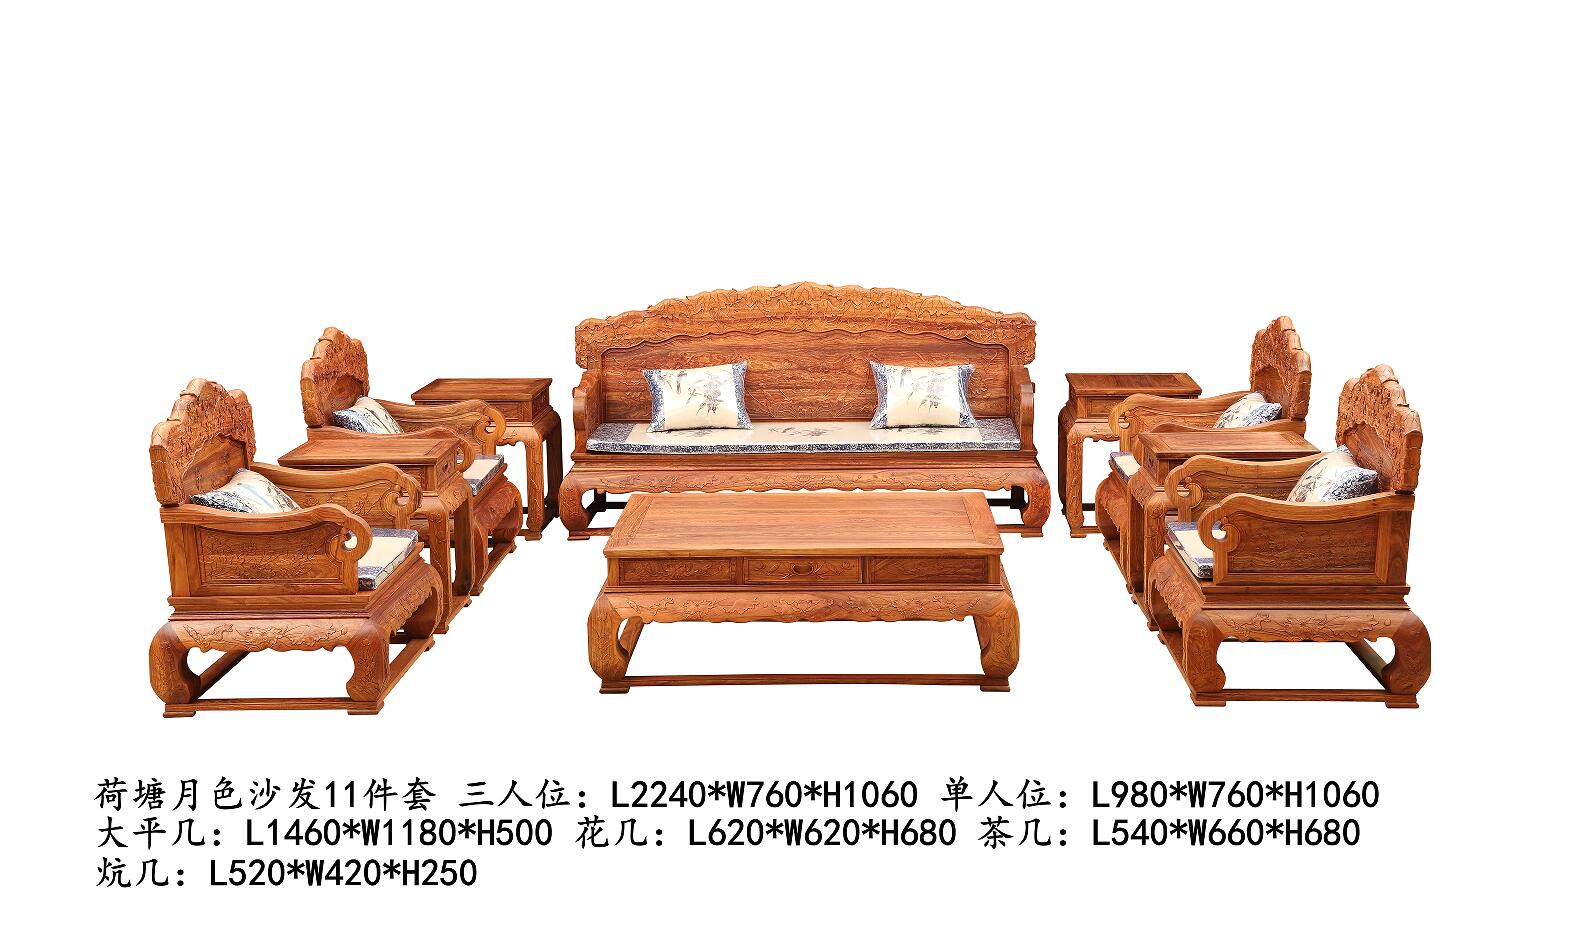 山东潍坊精品红木家具厂家冈比亚刺猬紫檀非洲花梨荷塘月色沙发